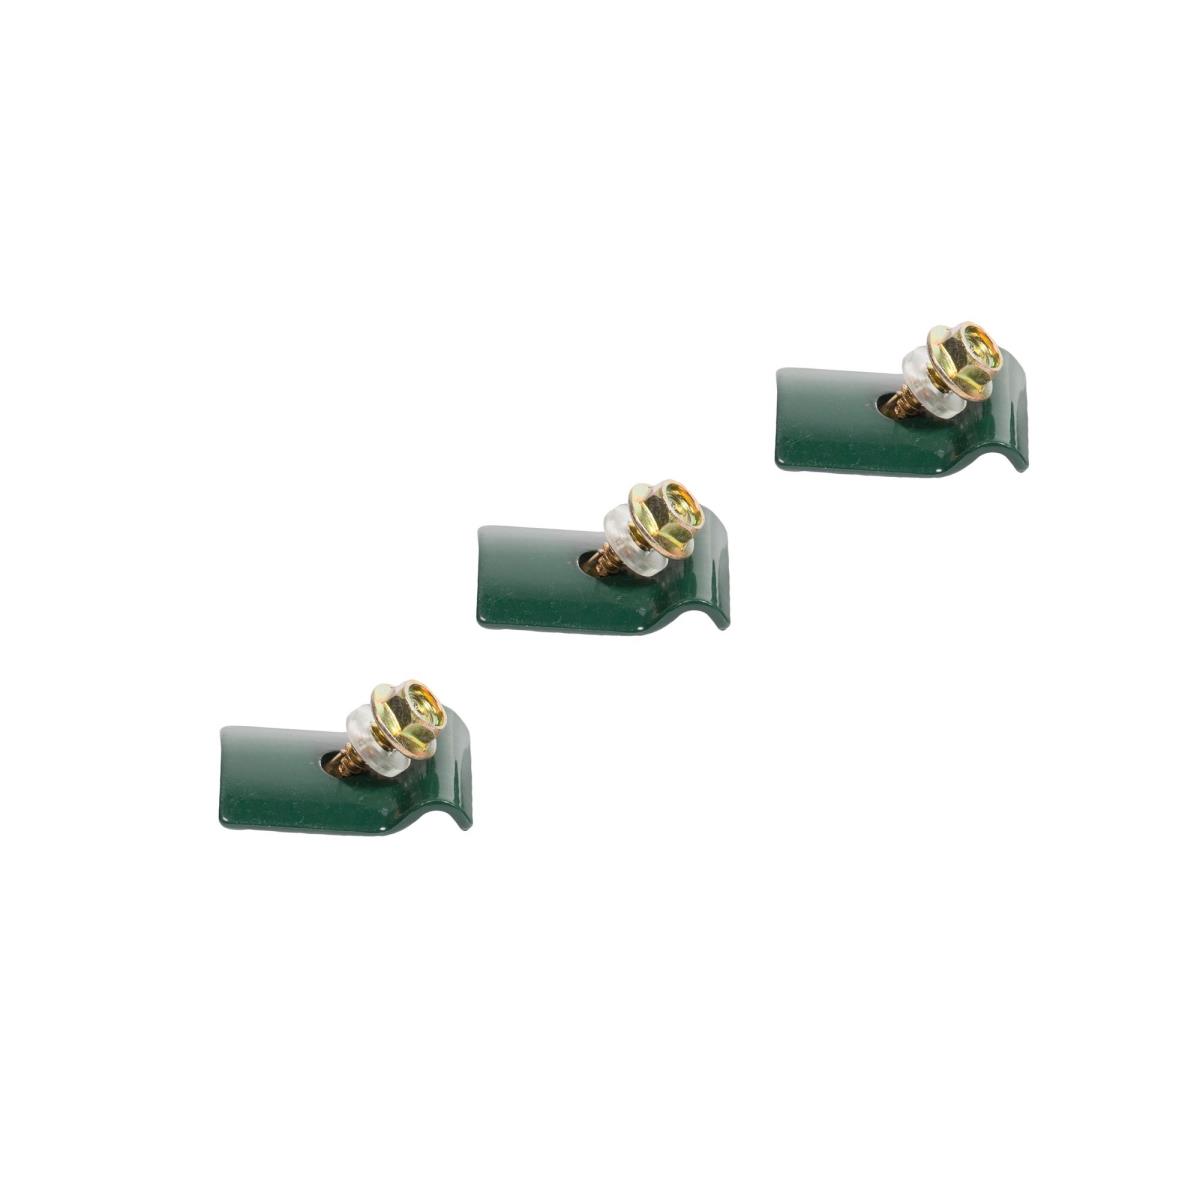 3x Spanndrahthalter mit Schrauben aus Metall grün,Gardencenter,000051123705, 4770364017636